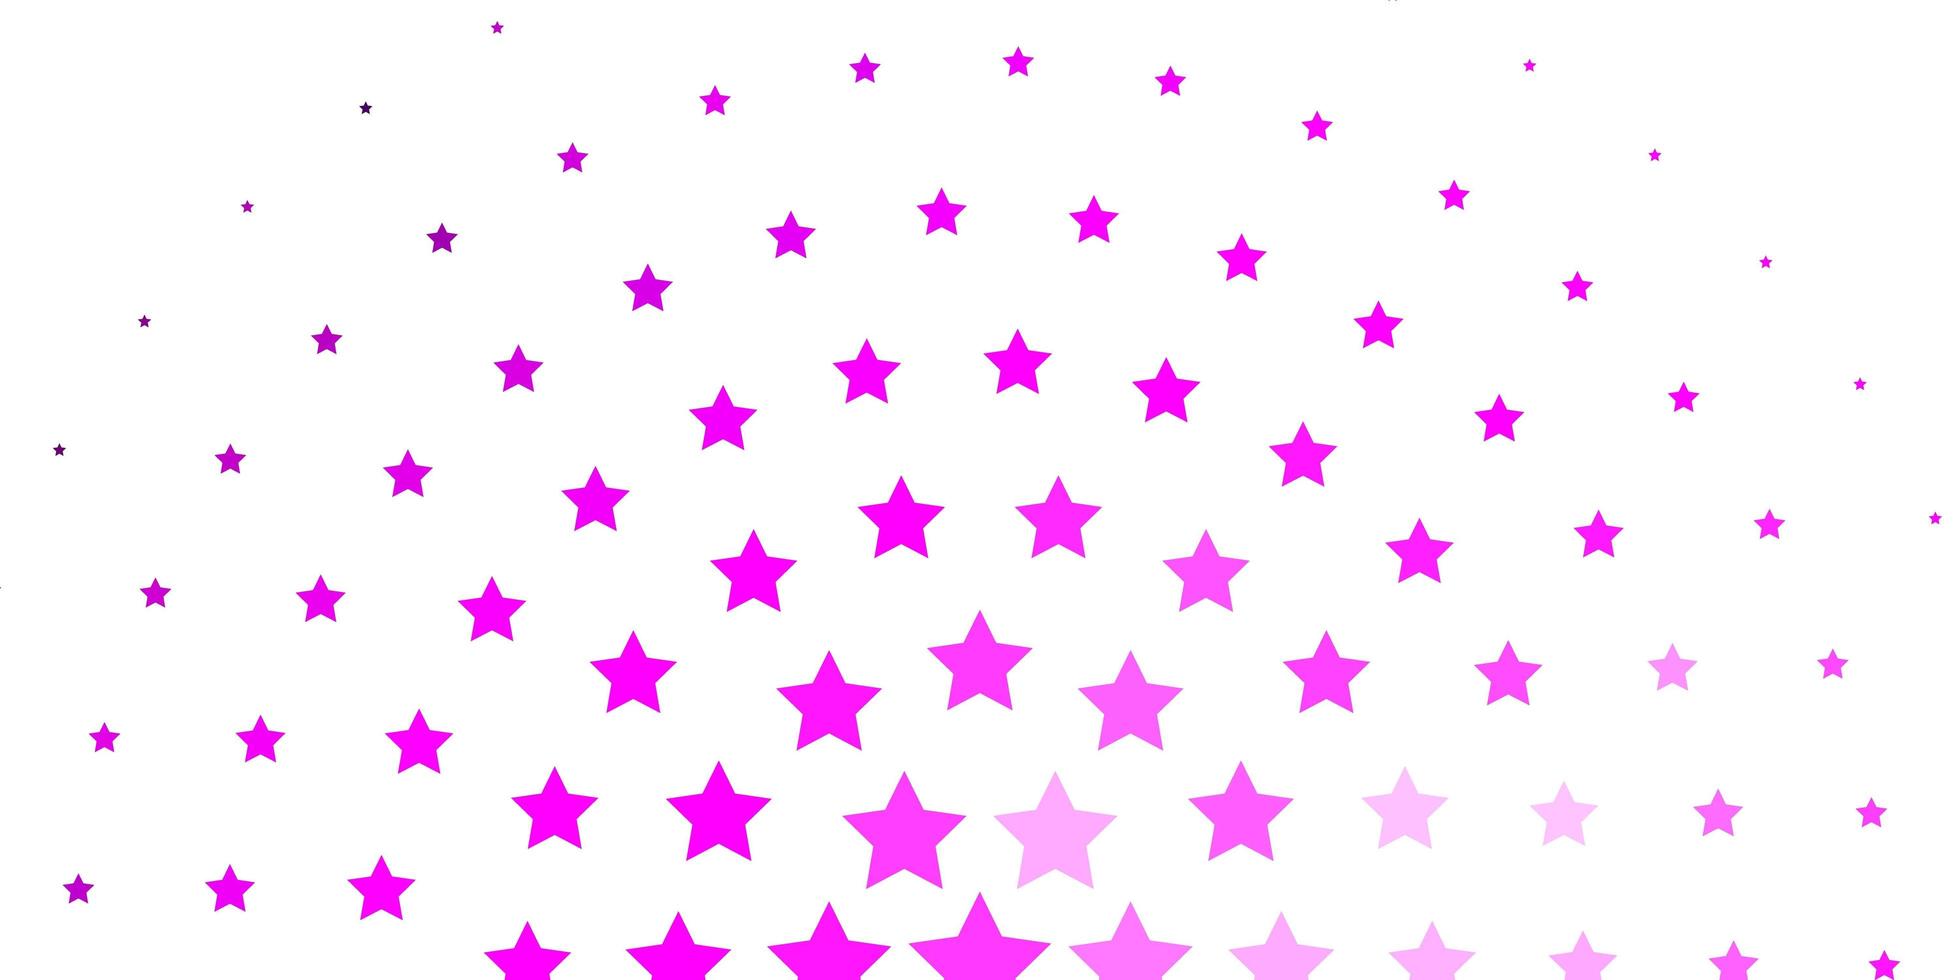 patrón de vector rosa claro con estrellas abstractas diseño decorativo borroso en estilo simple con patrón de estrellas para envolver regalos